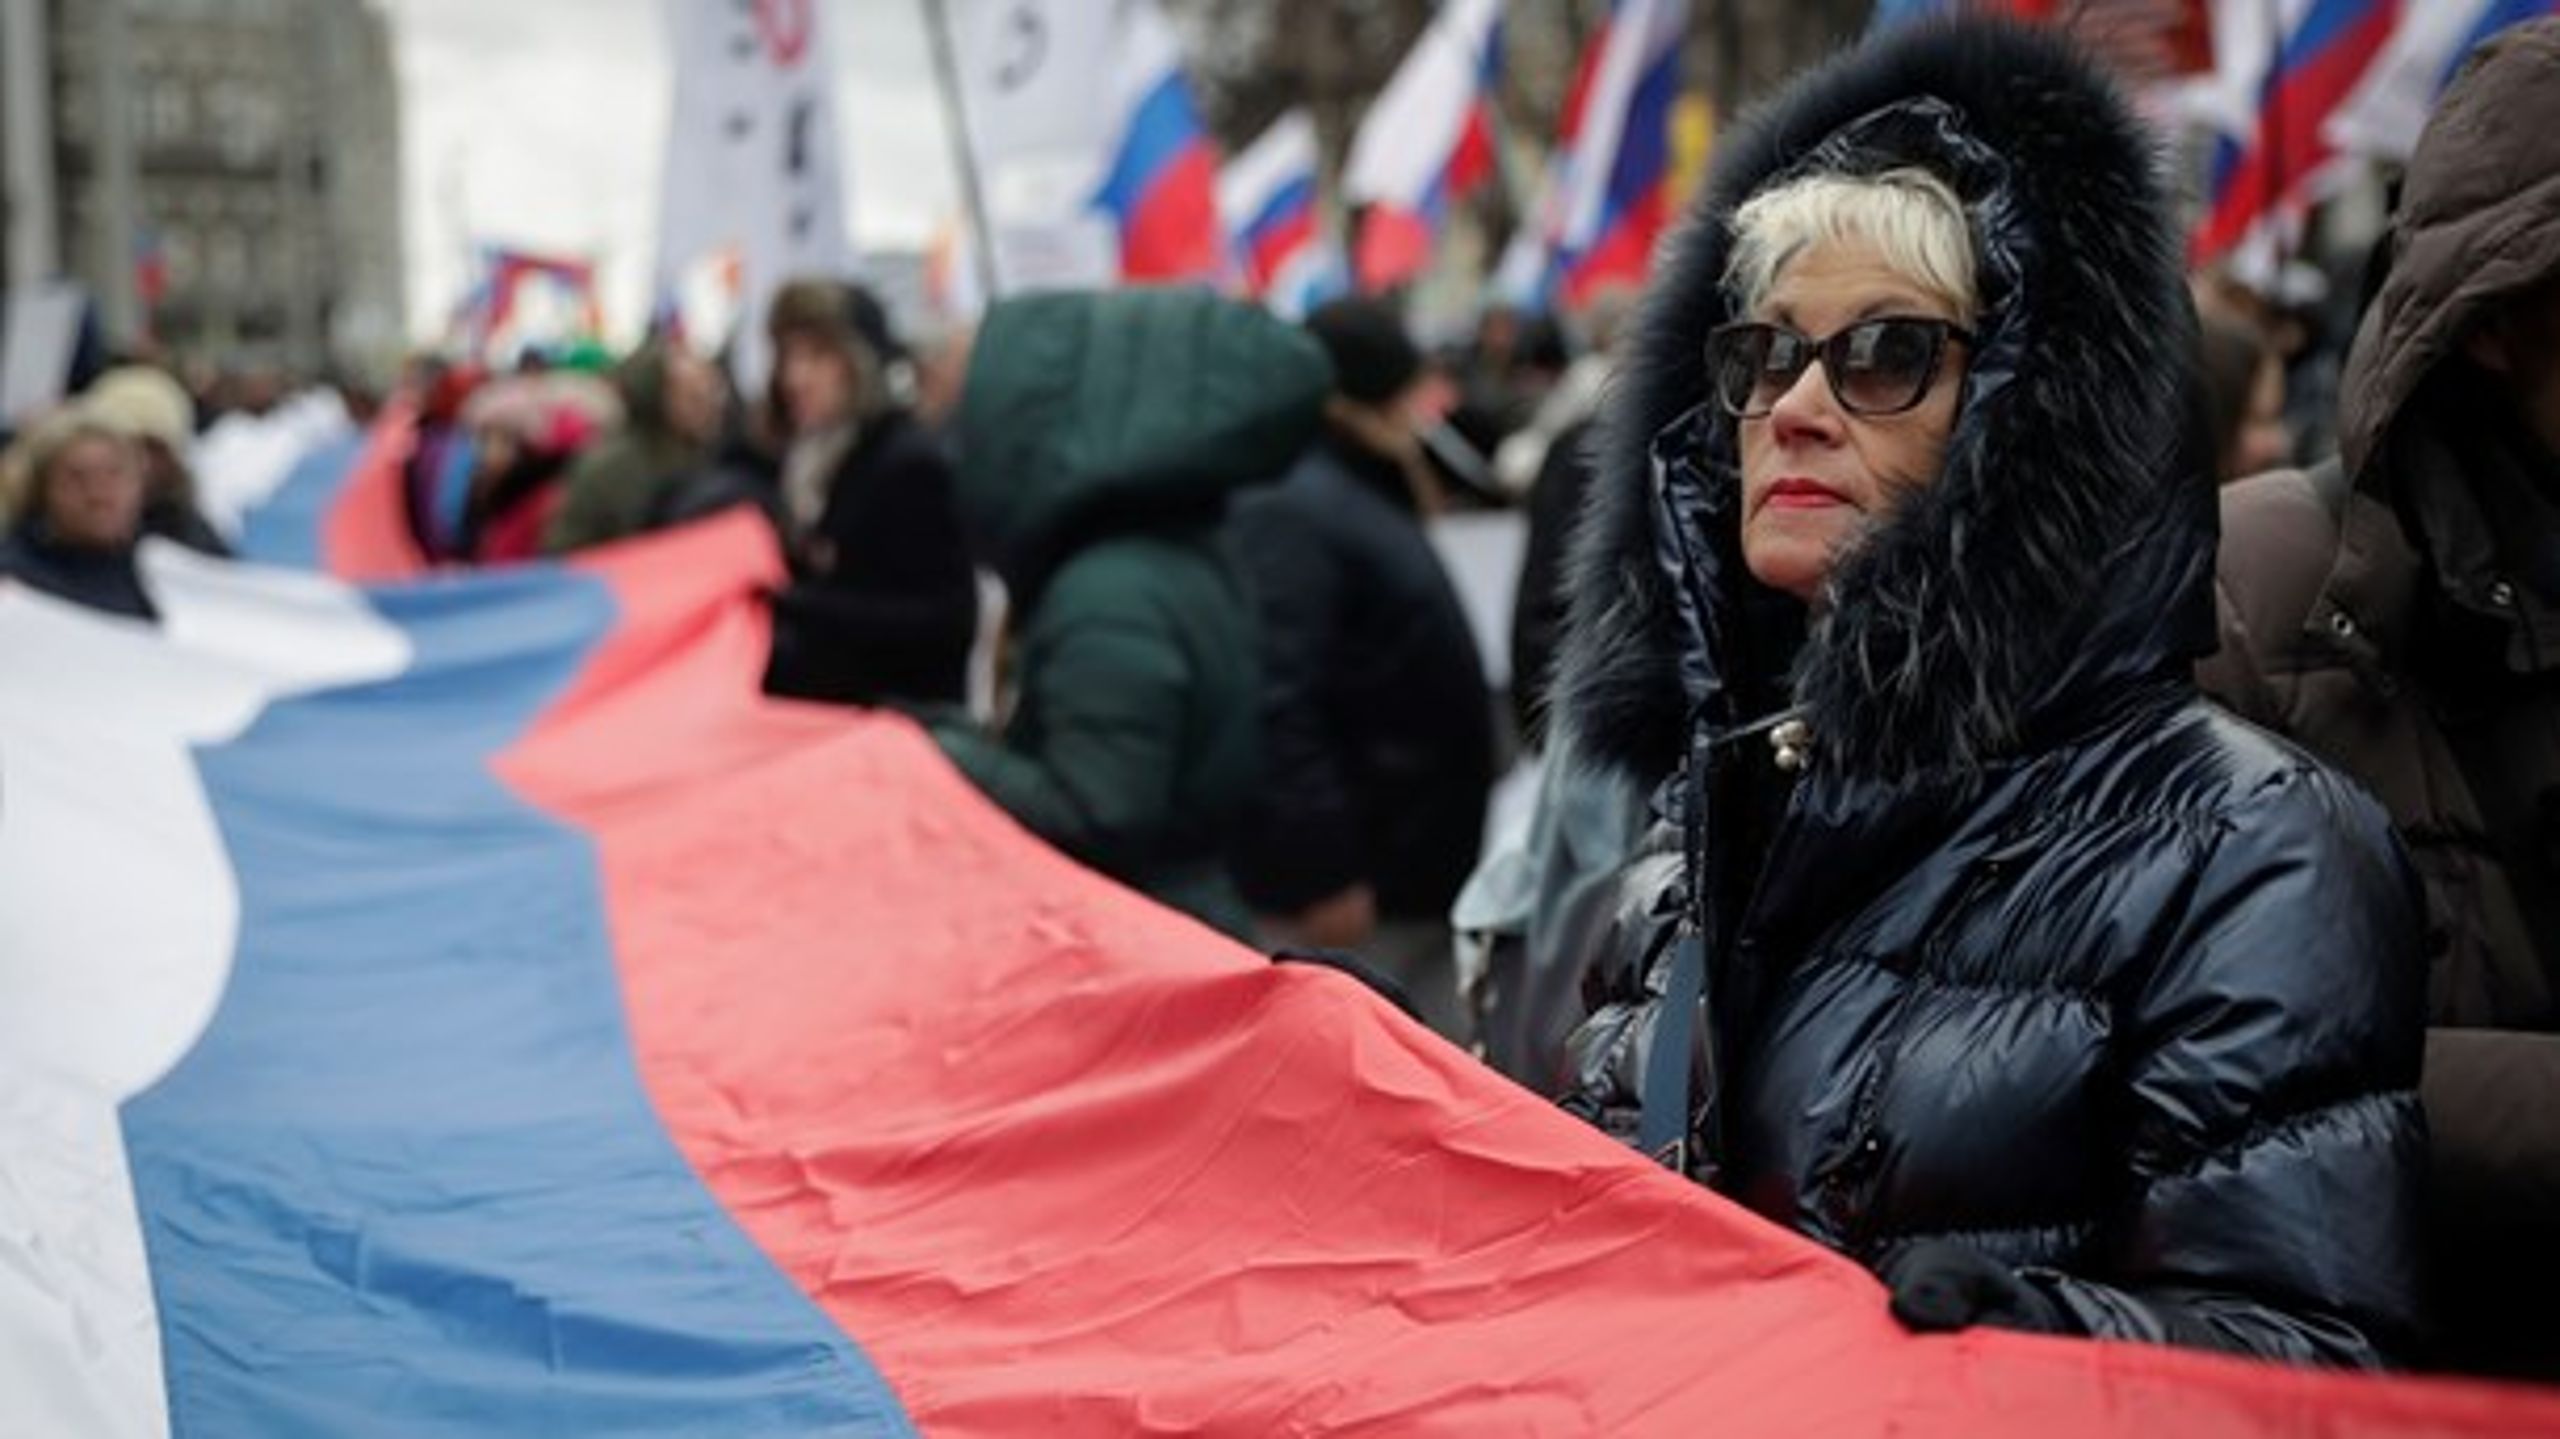 Moskva, Ryssland 29 februari 2020. Demonstranter samlas för att minnas oppositionsledaren Boris Nemtsovs död. Nemtsov, som var kritisk mot Vladimir Putin, blev skjuten 27 februari 2015.